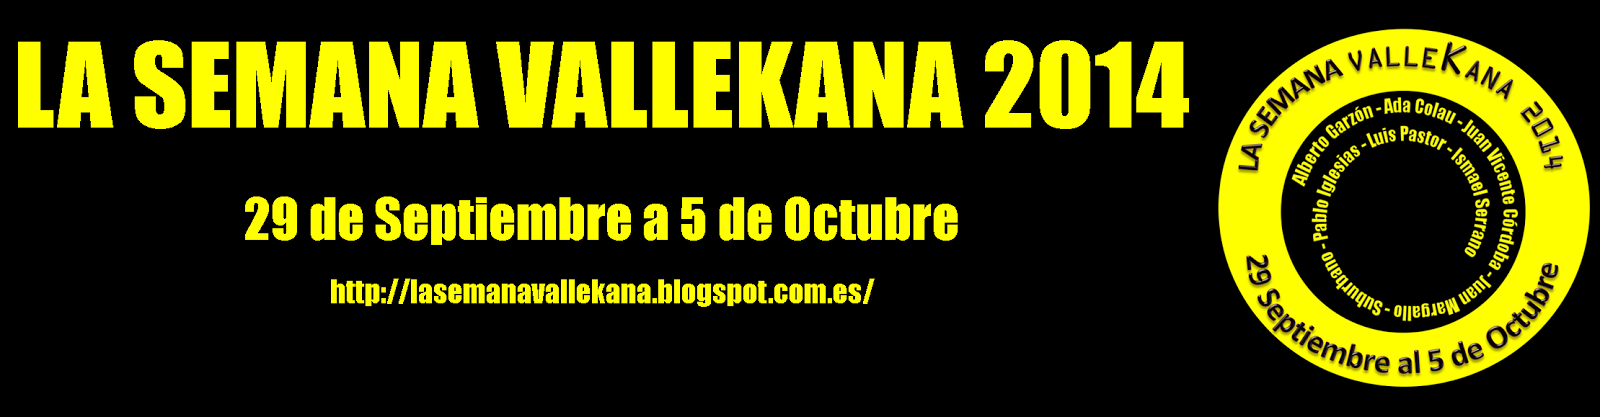 La Semana Vallekana 2014